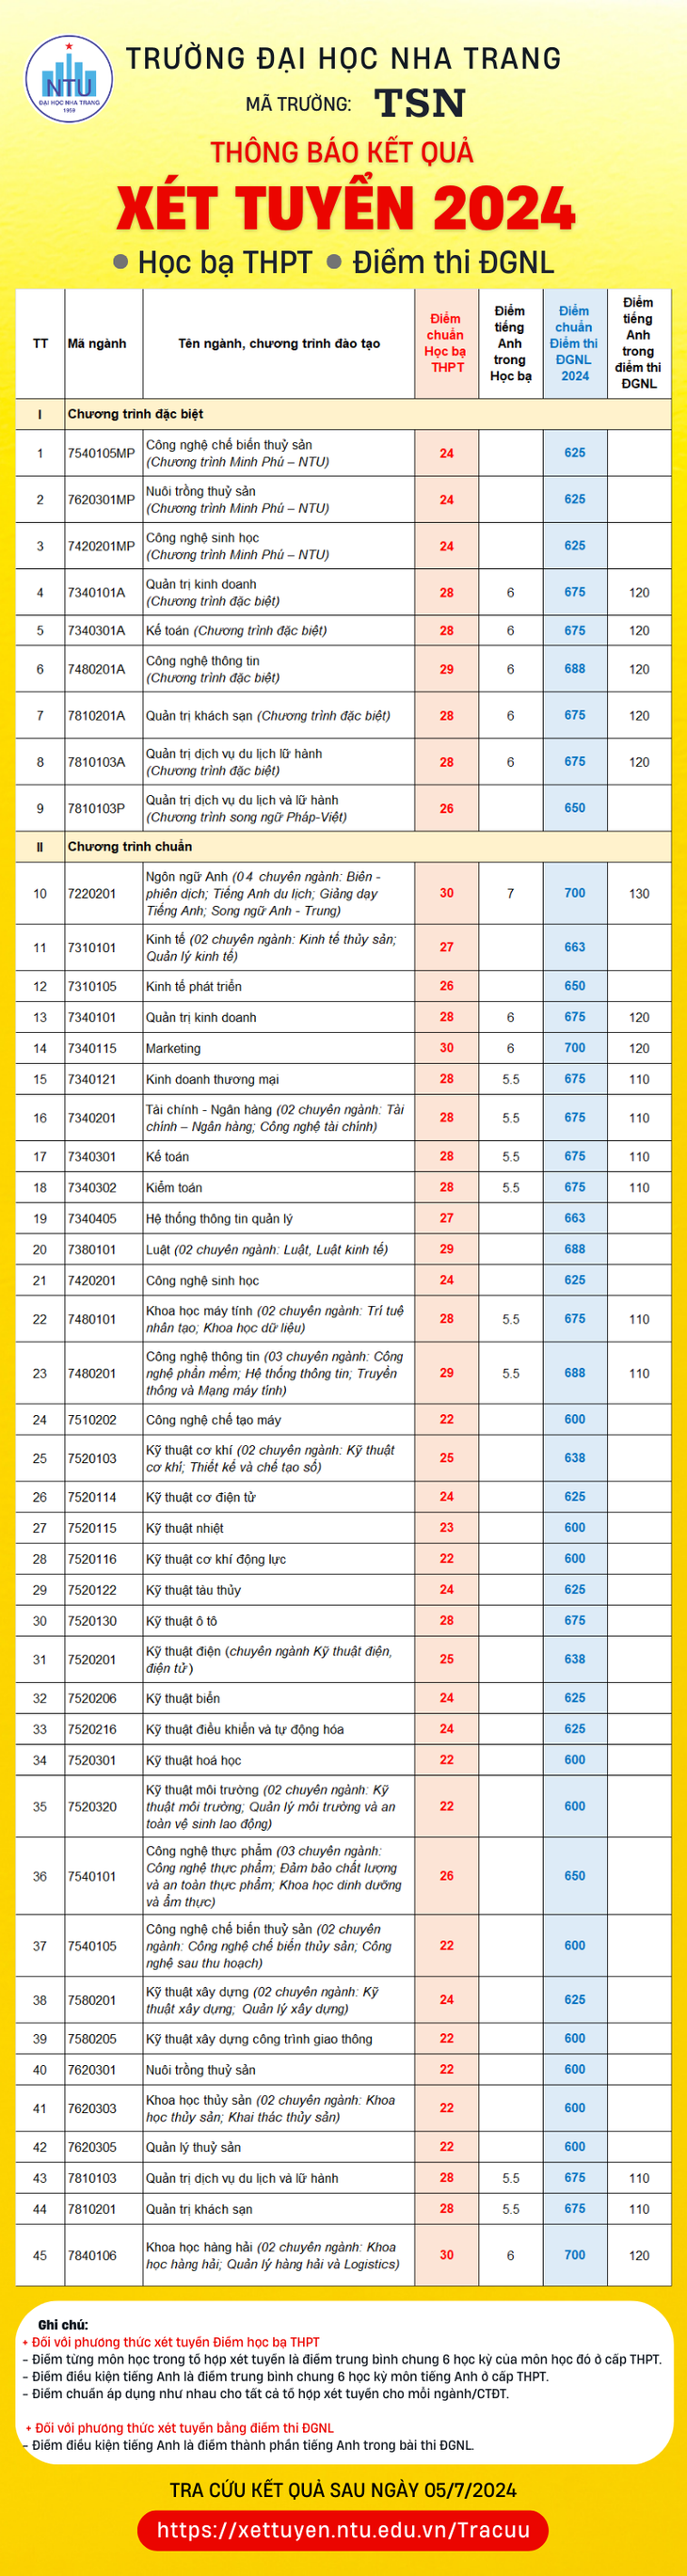 Bảng điểm chuẩn chi tiết các ngành của Trường đại học Nha Trang theo hai phương thức